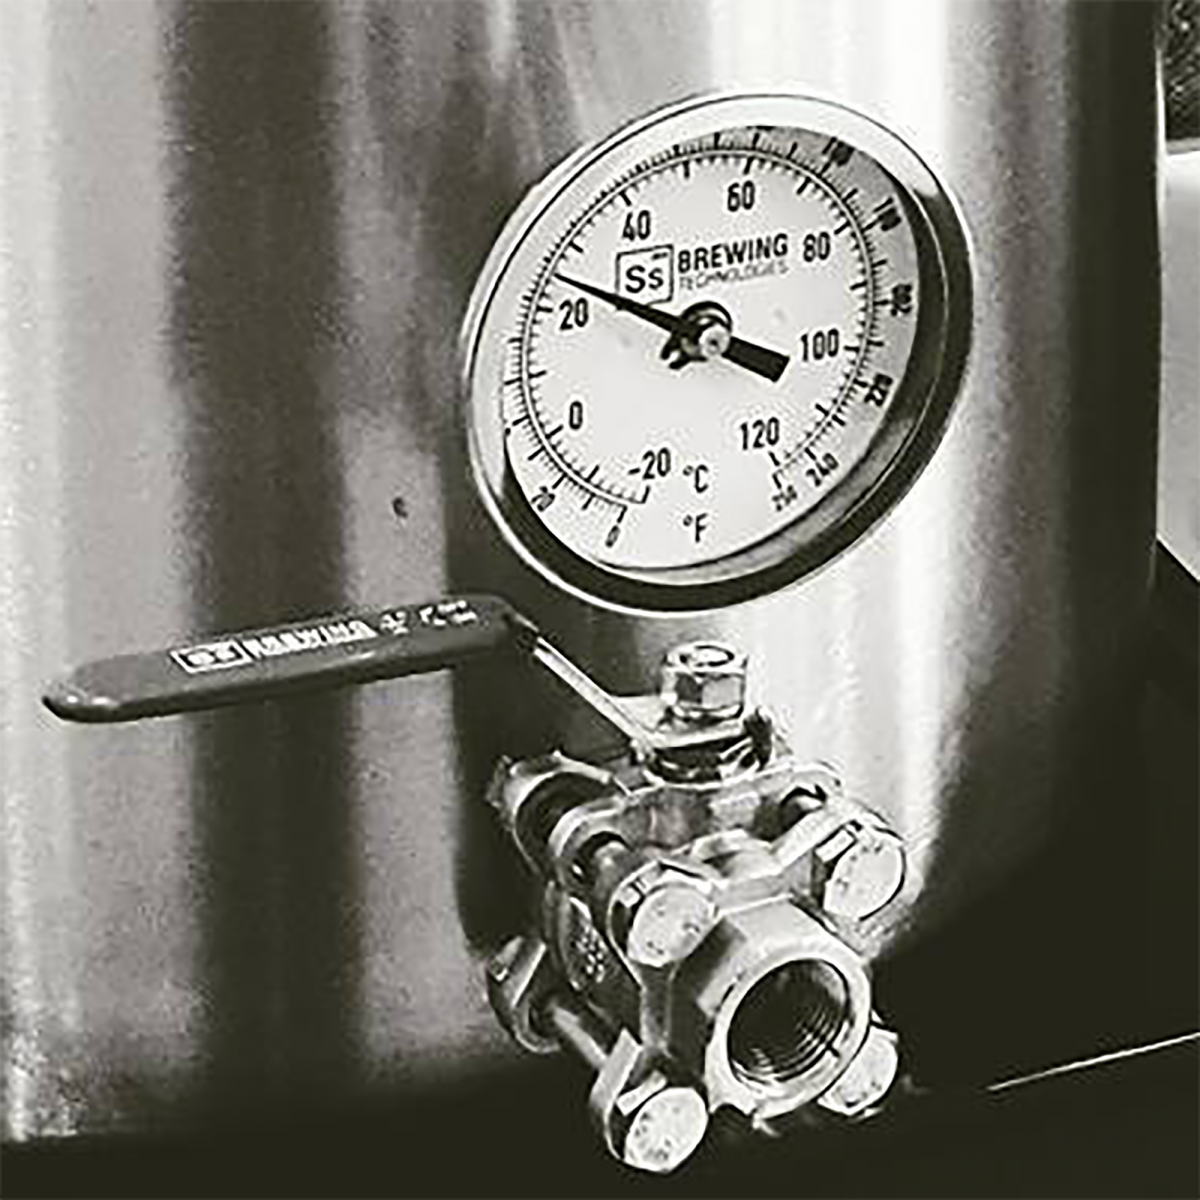 Ss Brewtech™ Thermometer (met Ss logo) voor Brew Kettles met 1 doorvoerkit